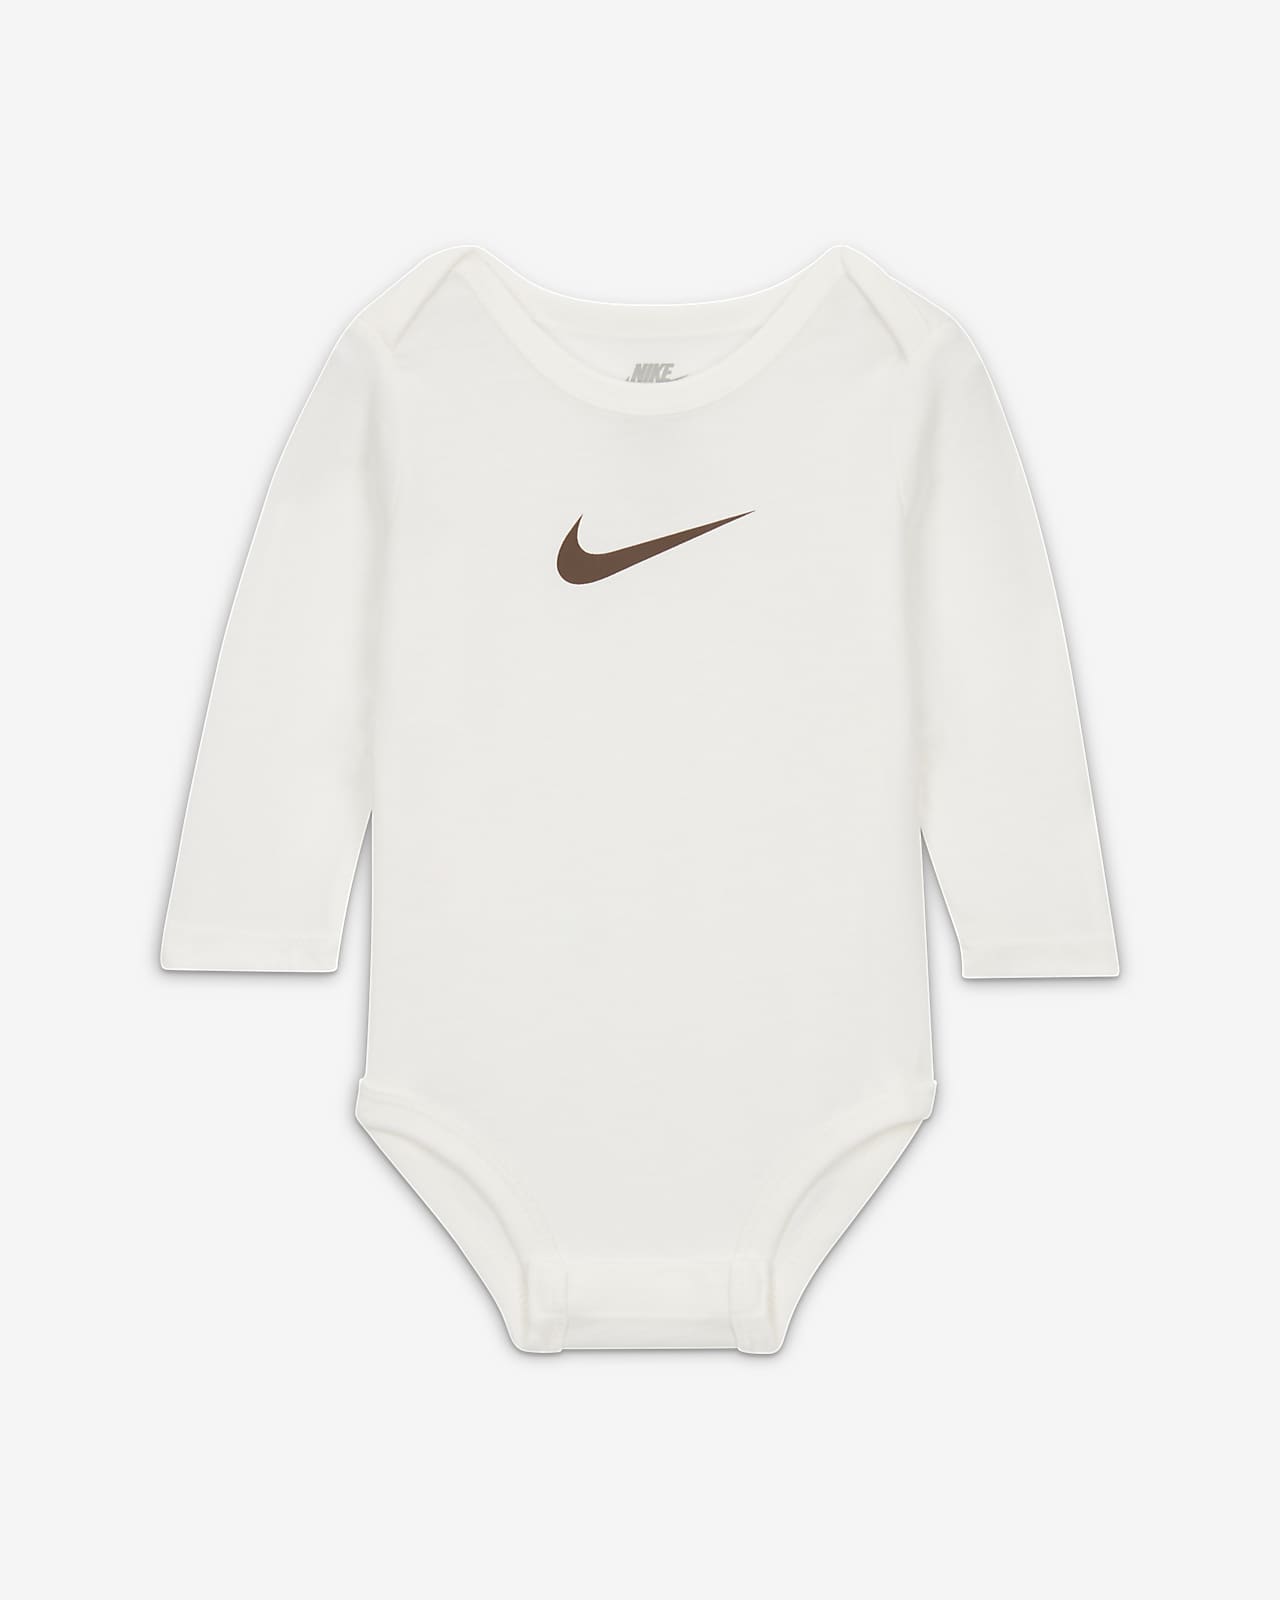 Nike E1D1 Bodysuit 3-Pack Bodysuits Baby Pack